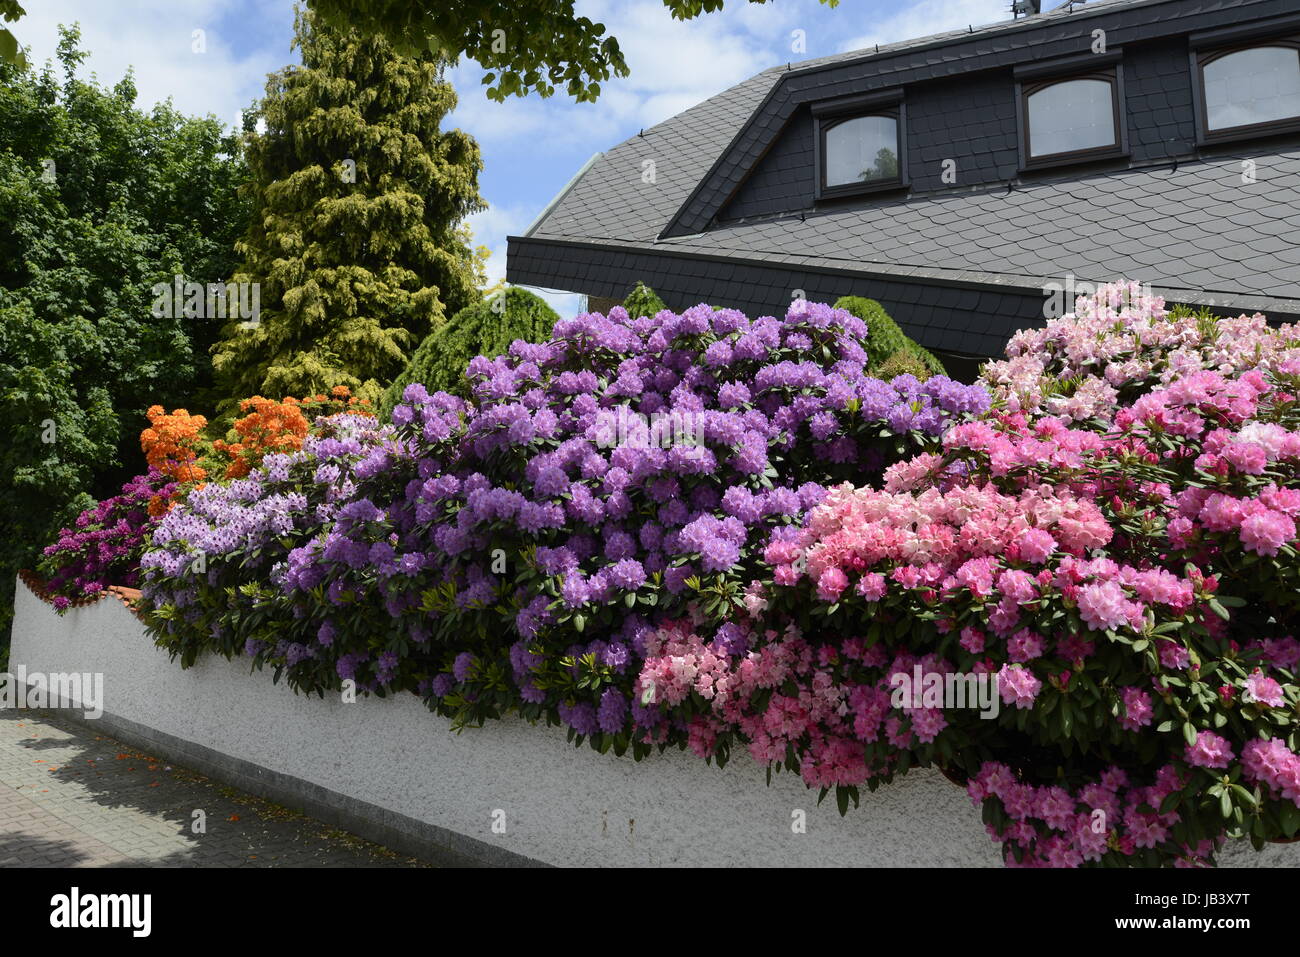 Rhododendron, Haus, blume, blumen, strauch, sträucher, mai, juni, garten,  bunt, wohnhaus, mauer, blüte, blüten, zierpflanze, zierstrauch Stock Photo  - Alamy